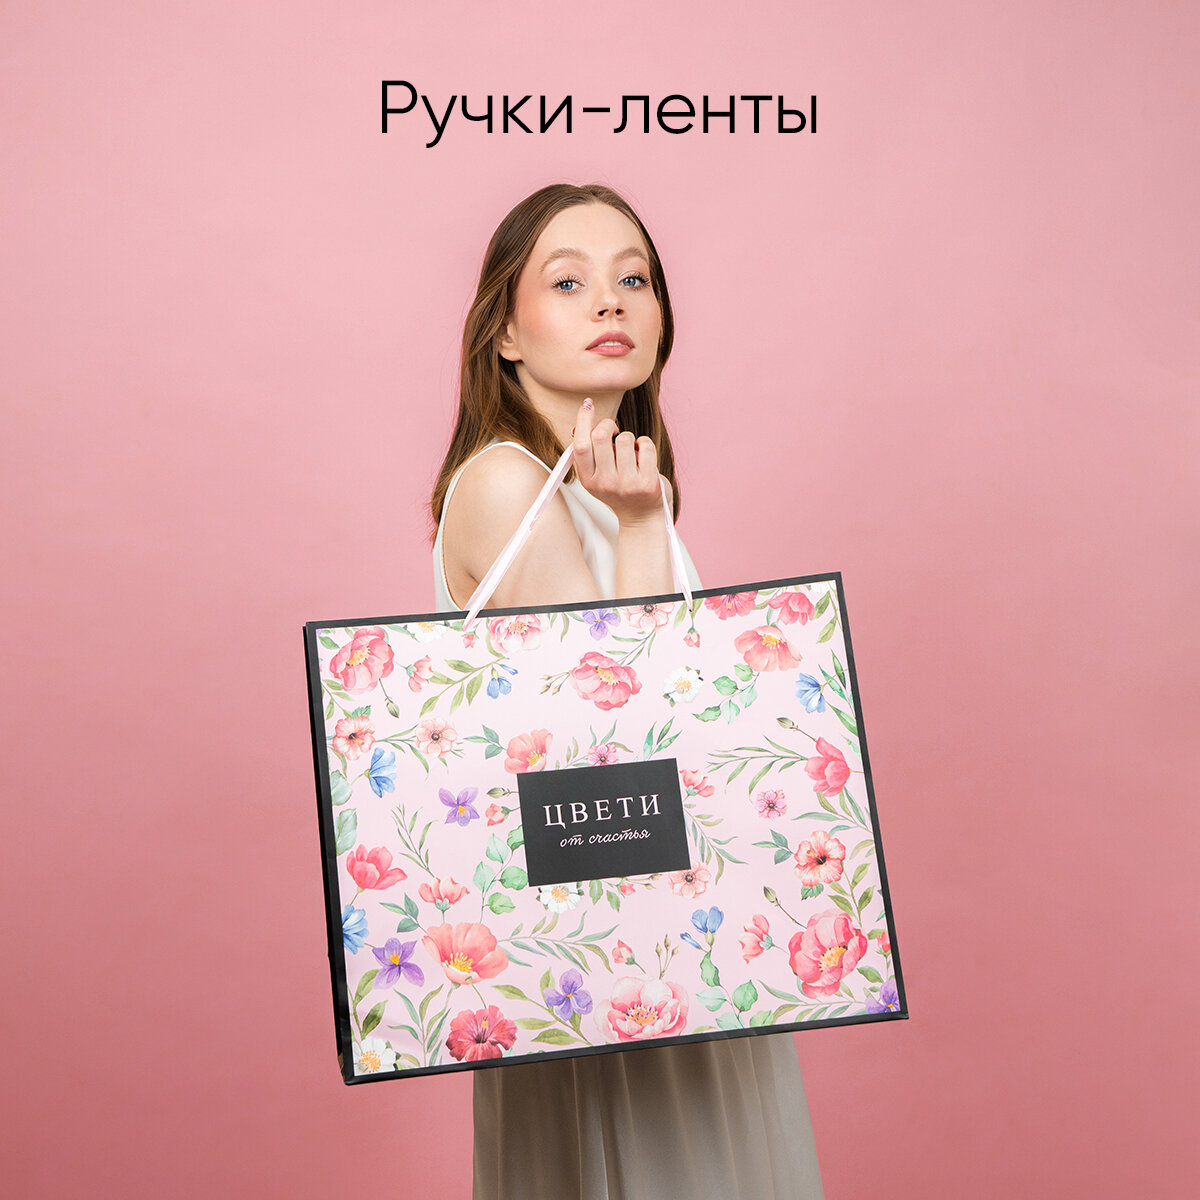 Пакет подарочный ламинированный большой «Цвети», 49 × 40 × 19 см